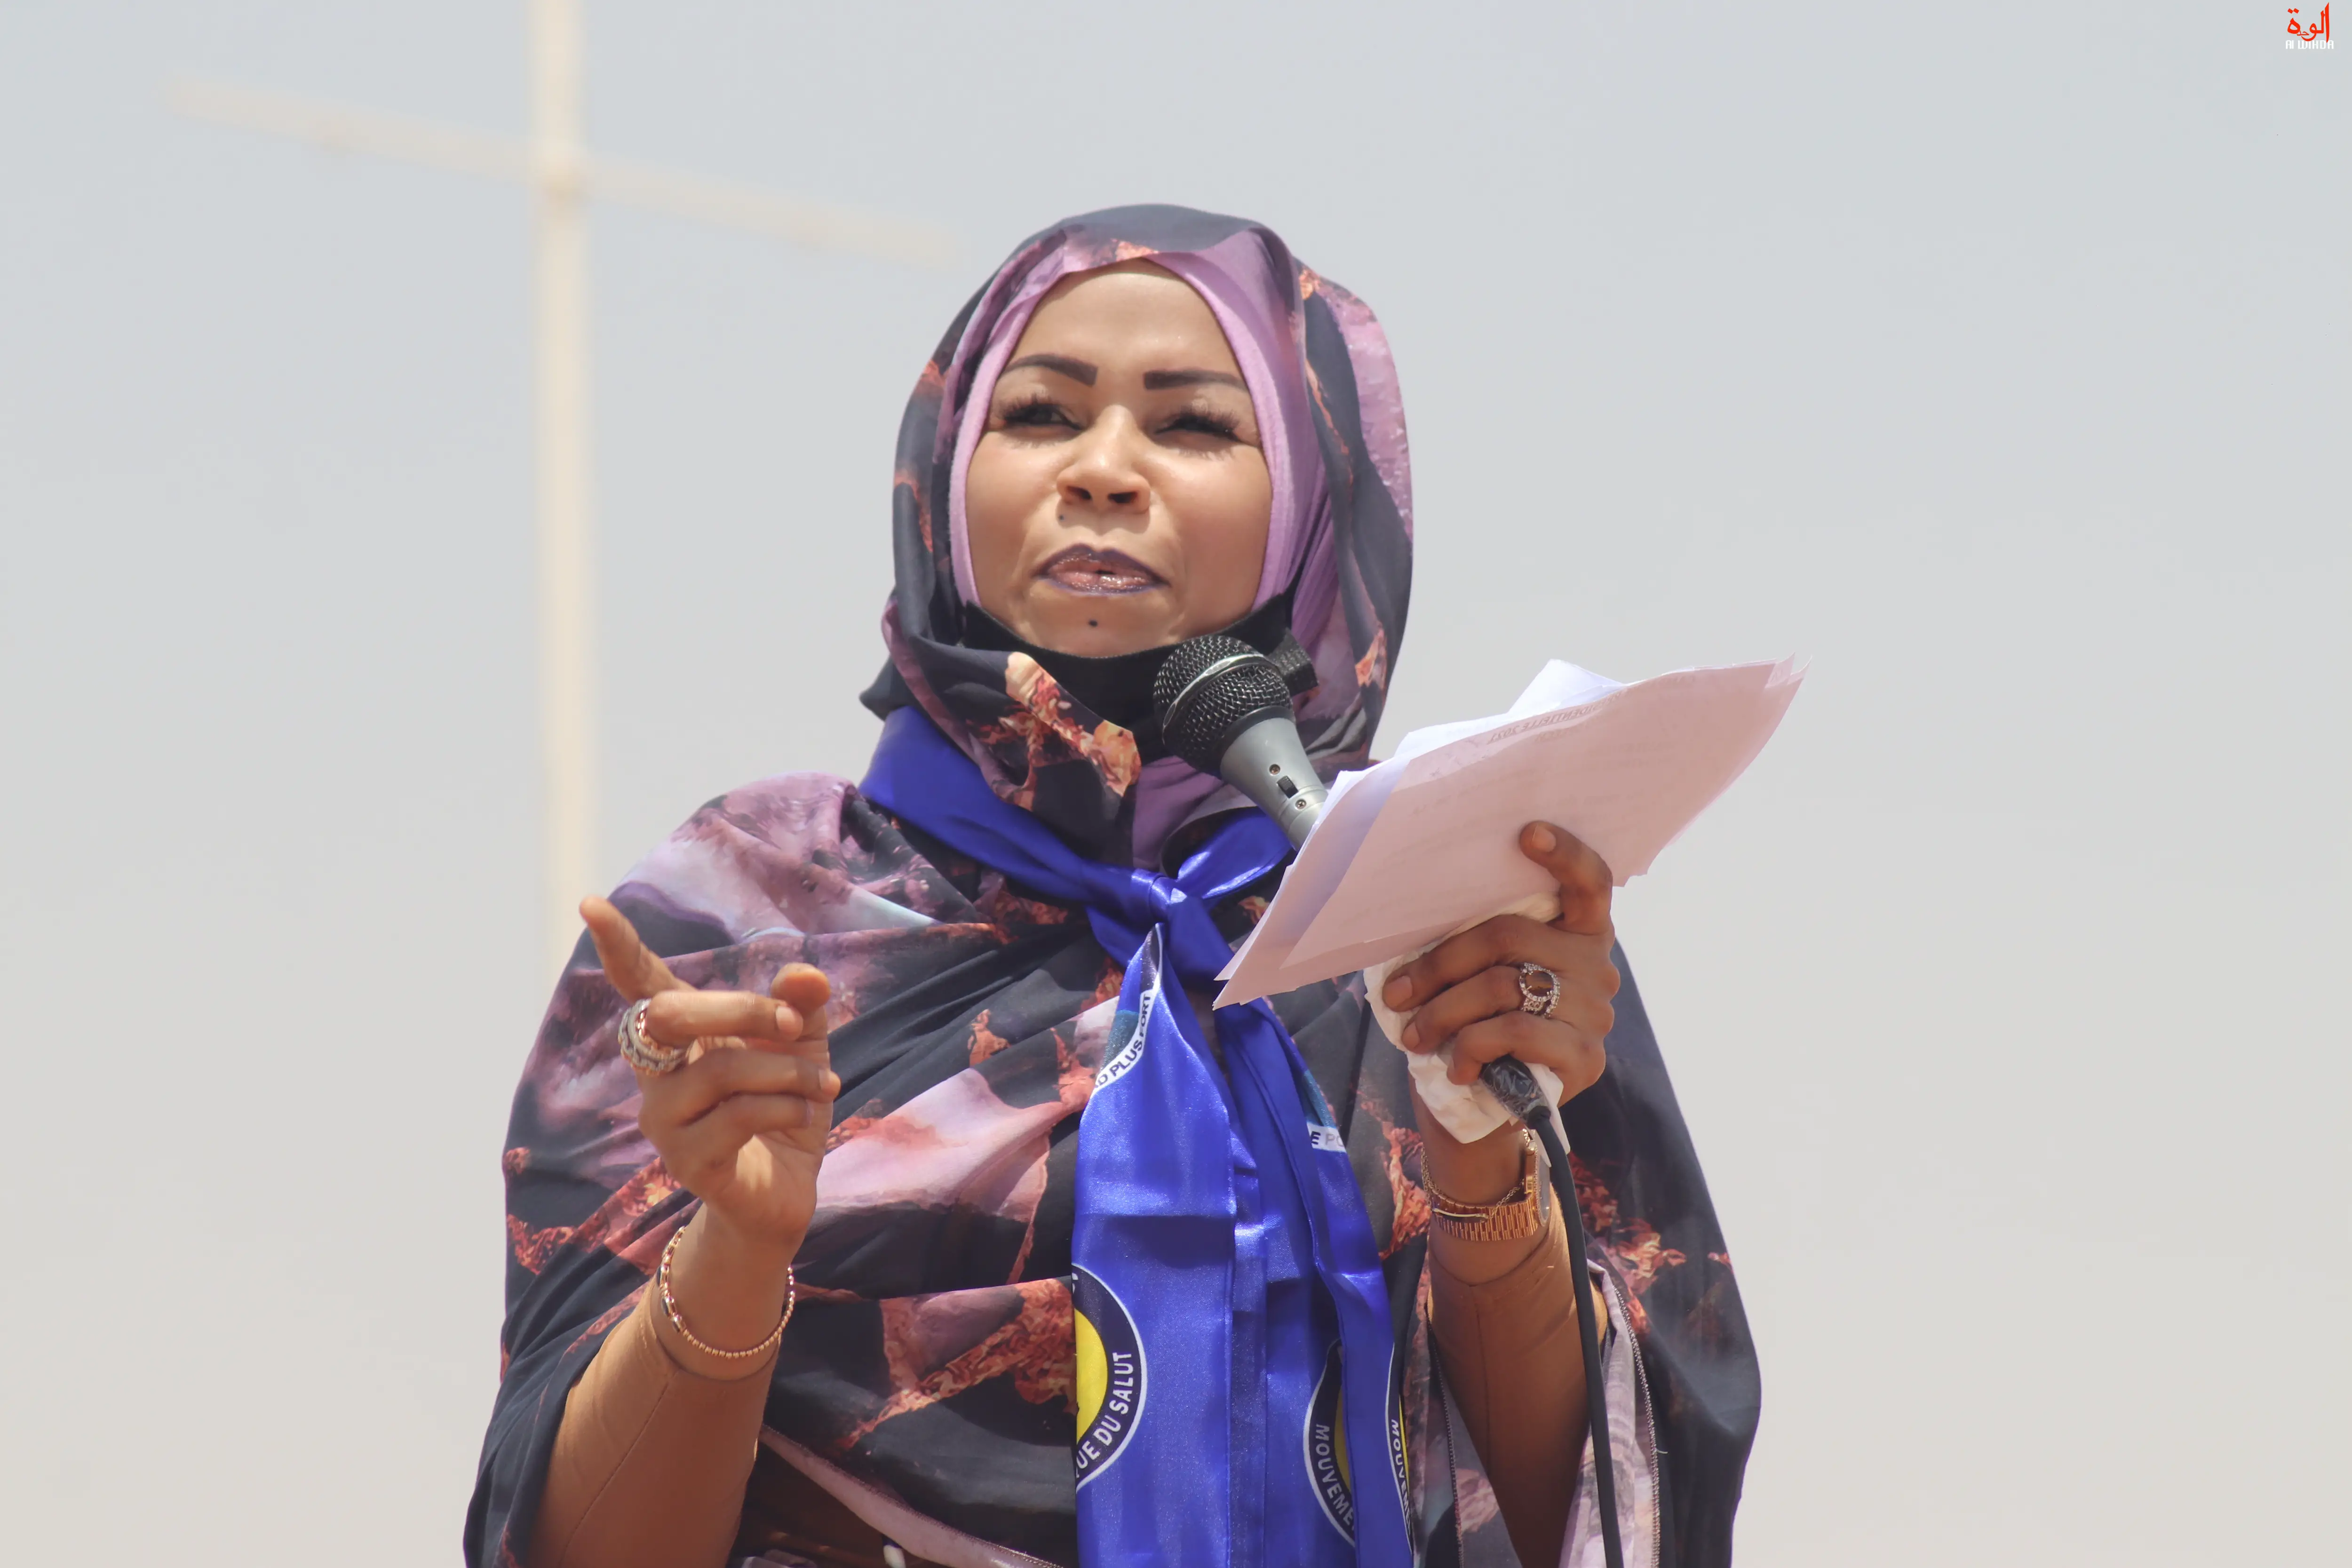 Tchad : l'ex-première dame Hinda Deby auditionnée pour besoin d'enquête